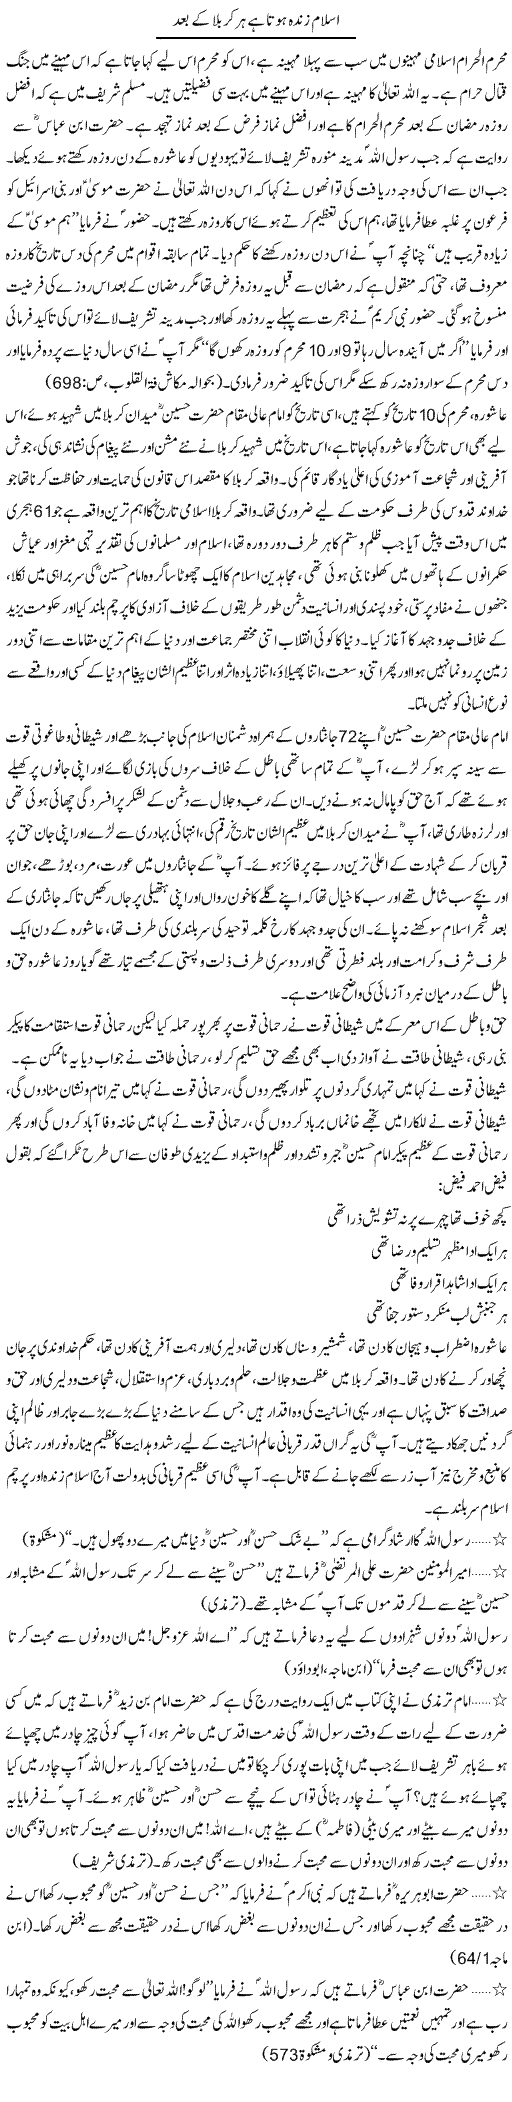 Islam Zinda Hota Hai Har Karbala Ke Baad | Dr. Muhammad Tayyab Khan Singhanvi | Daily Urdu Columns